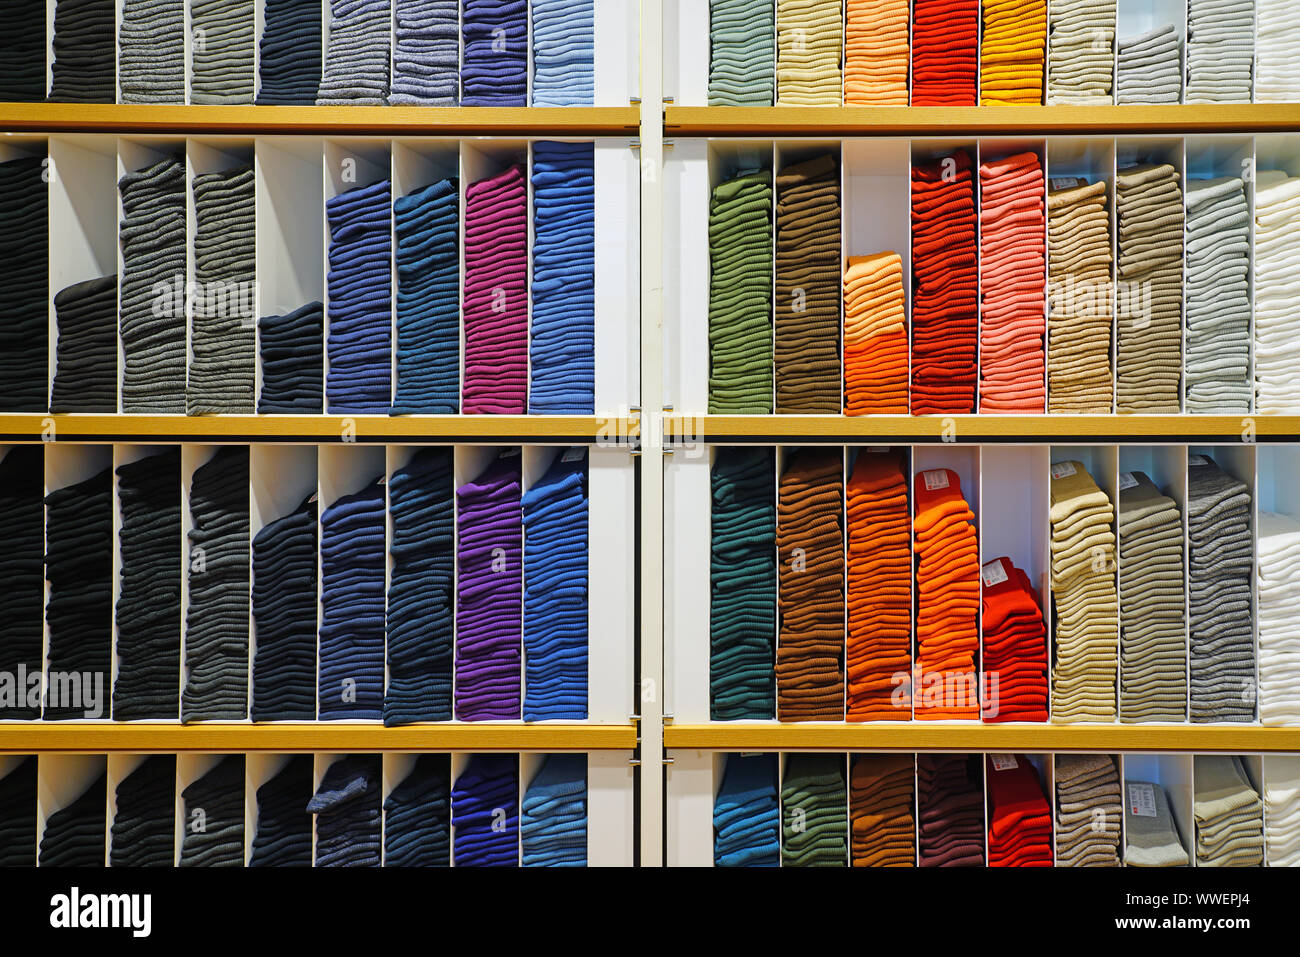 RENNES, FRANCE - 23 juillet 2019- Affichage des chaussettes colorées dans  un magasin Uniqlo à Rennes, France. Uniqlo est un détaillant de vêtements  japonais Photo Stock - Alamy